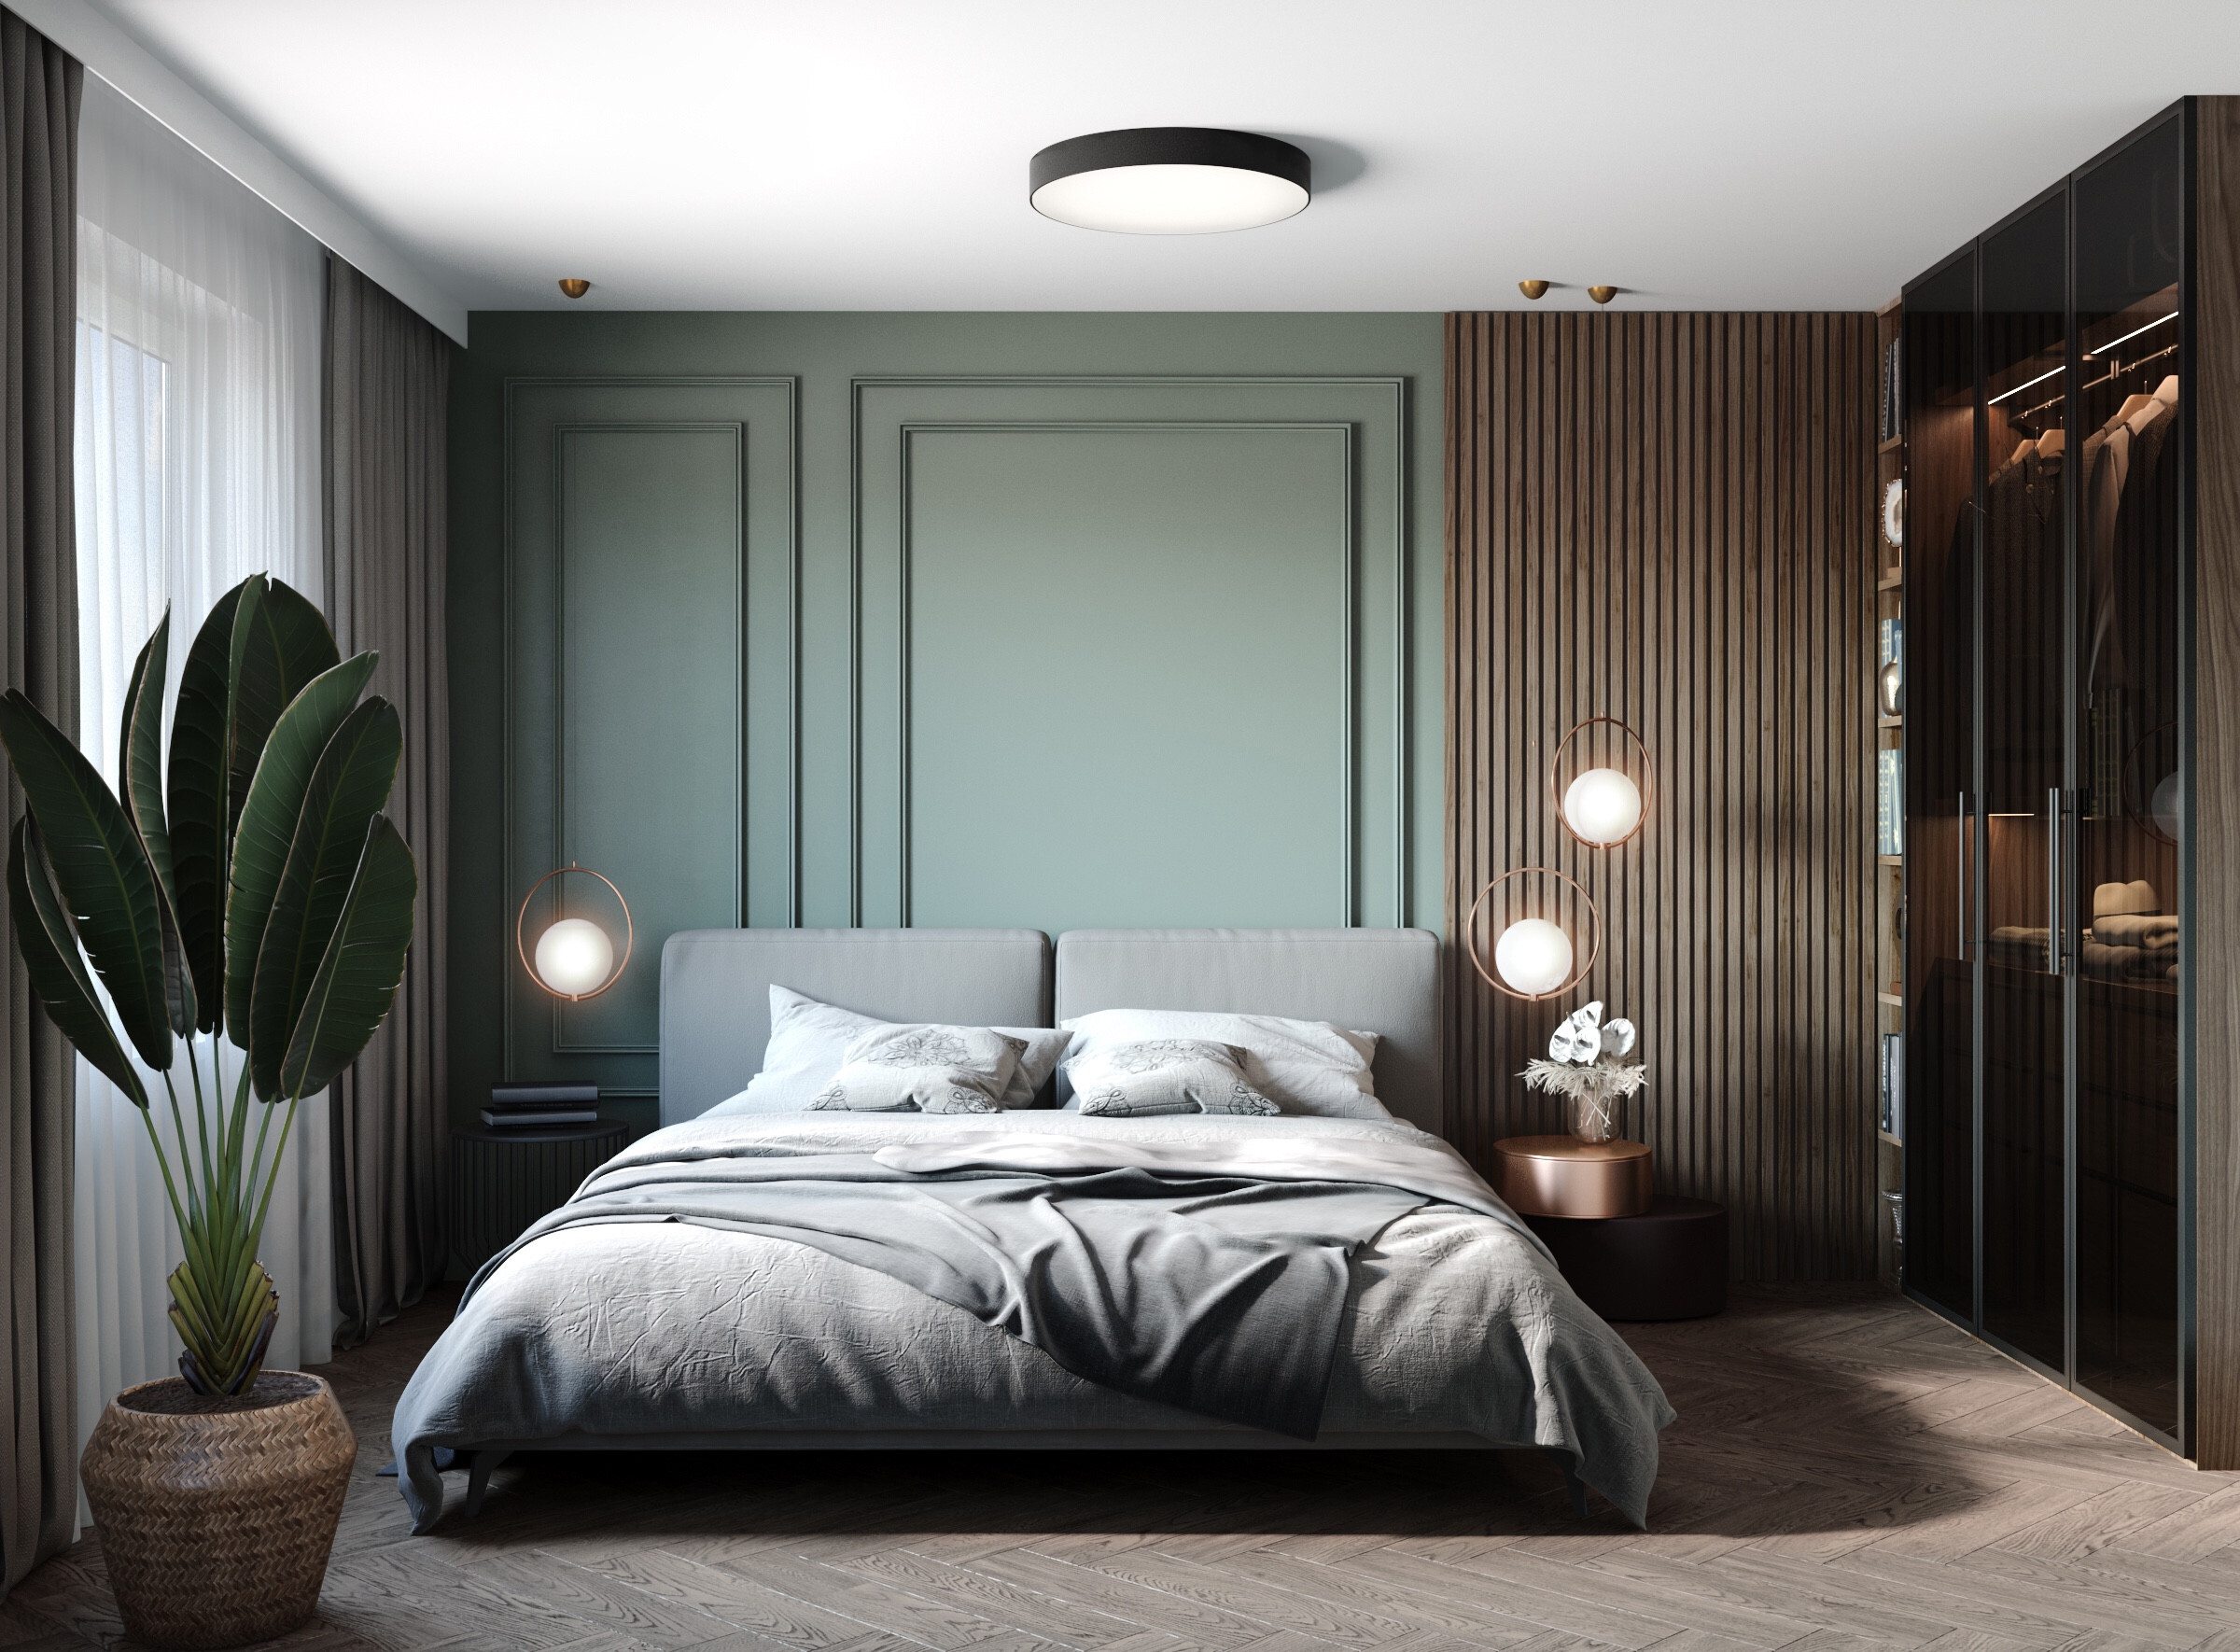 Интерьер спальни cветовыми линиями, подсветкой светодиодной и светильниками над кроватью в современном стиле